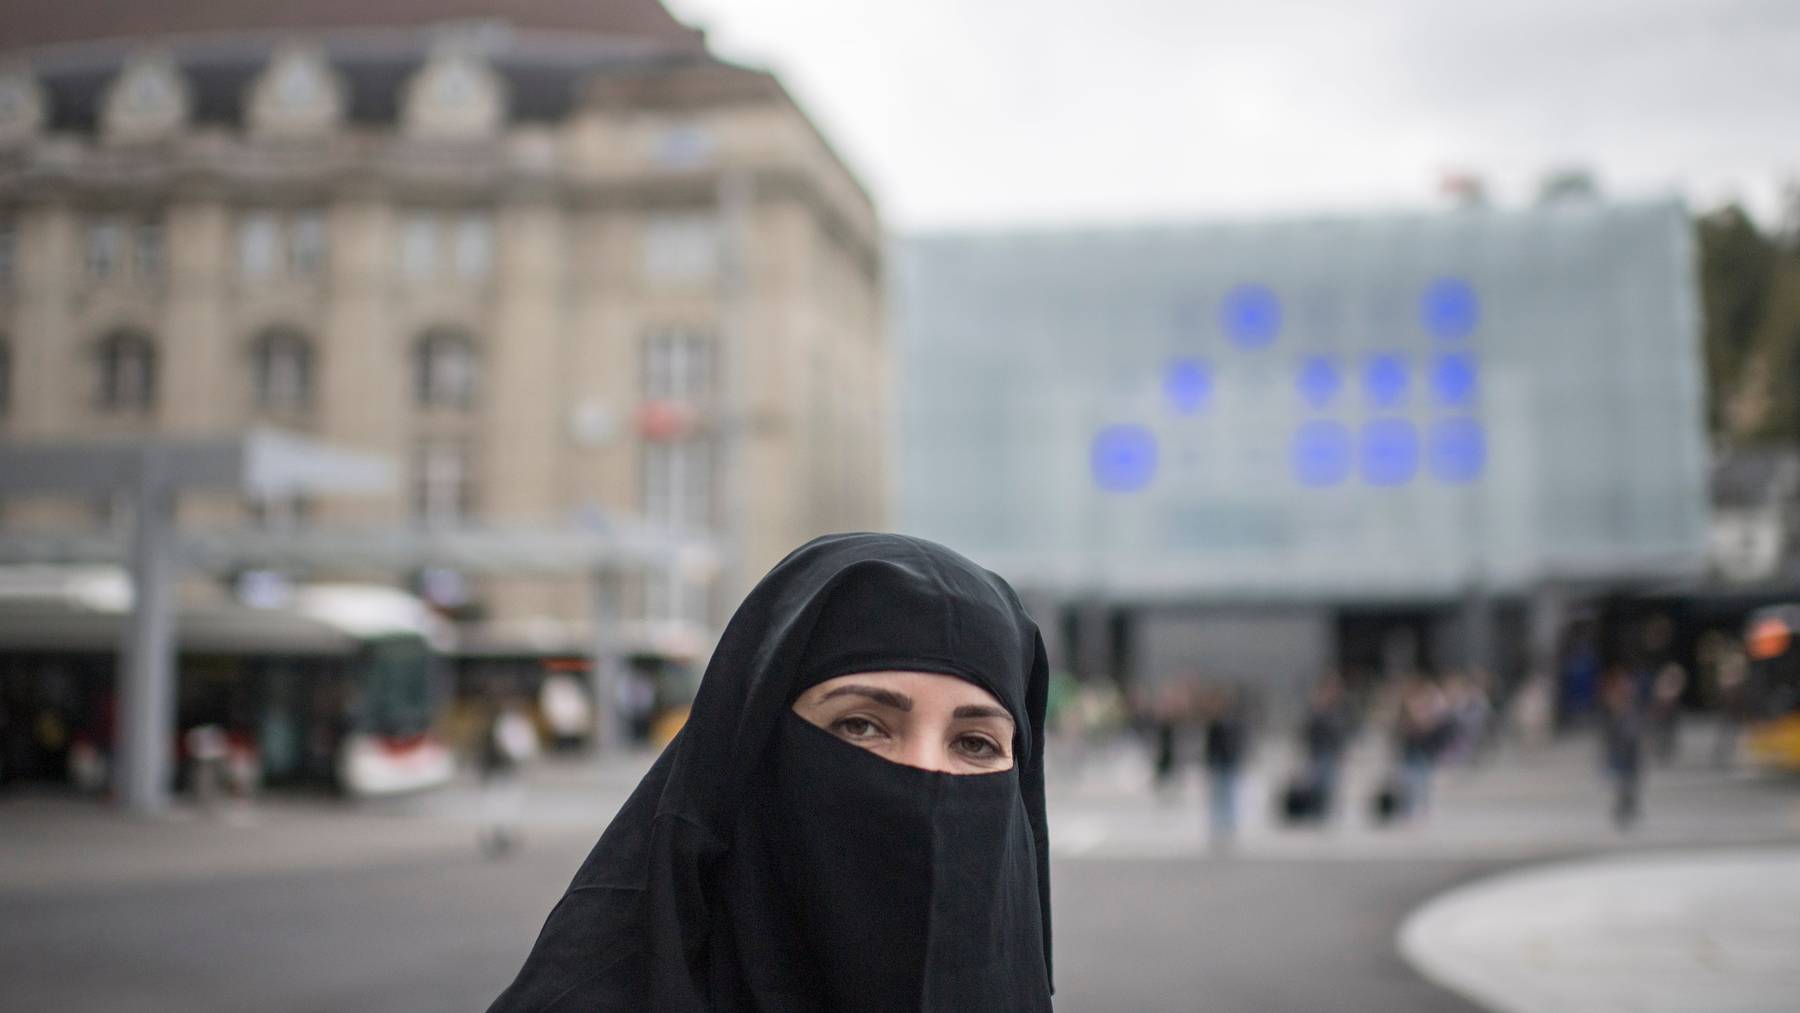 Dürfen Frauen aus religiösen Gründen ihr Gesicht verhüllen? Nein, findet die Burka-Initiative. (Symbolbild)